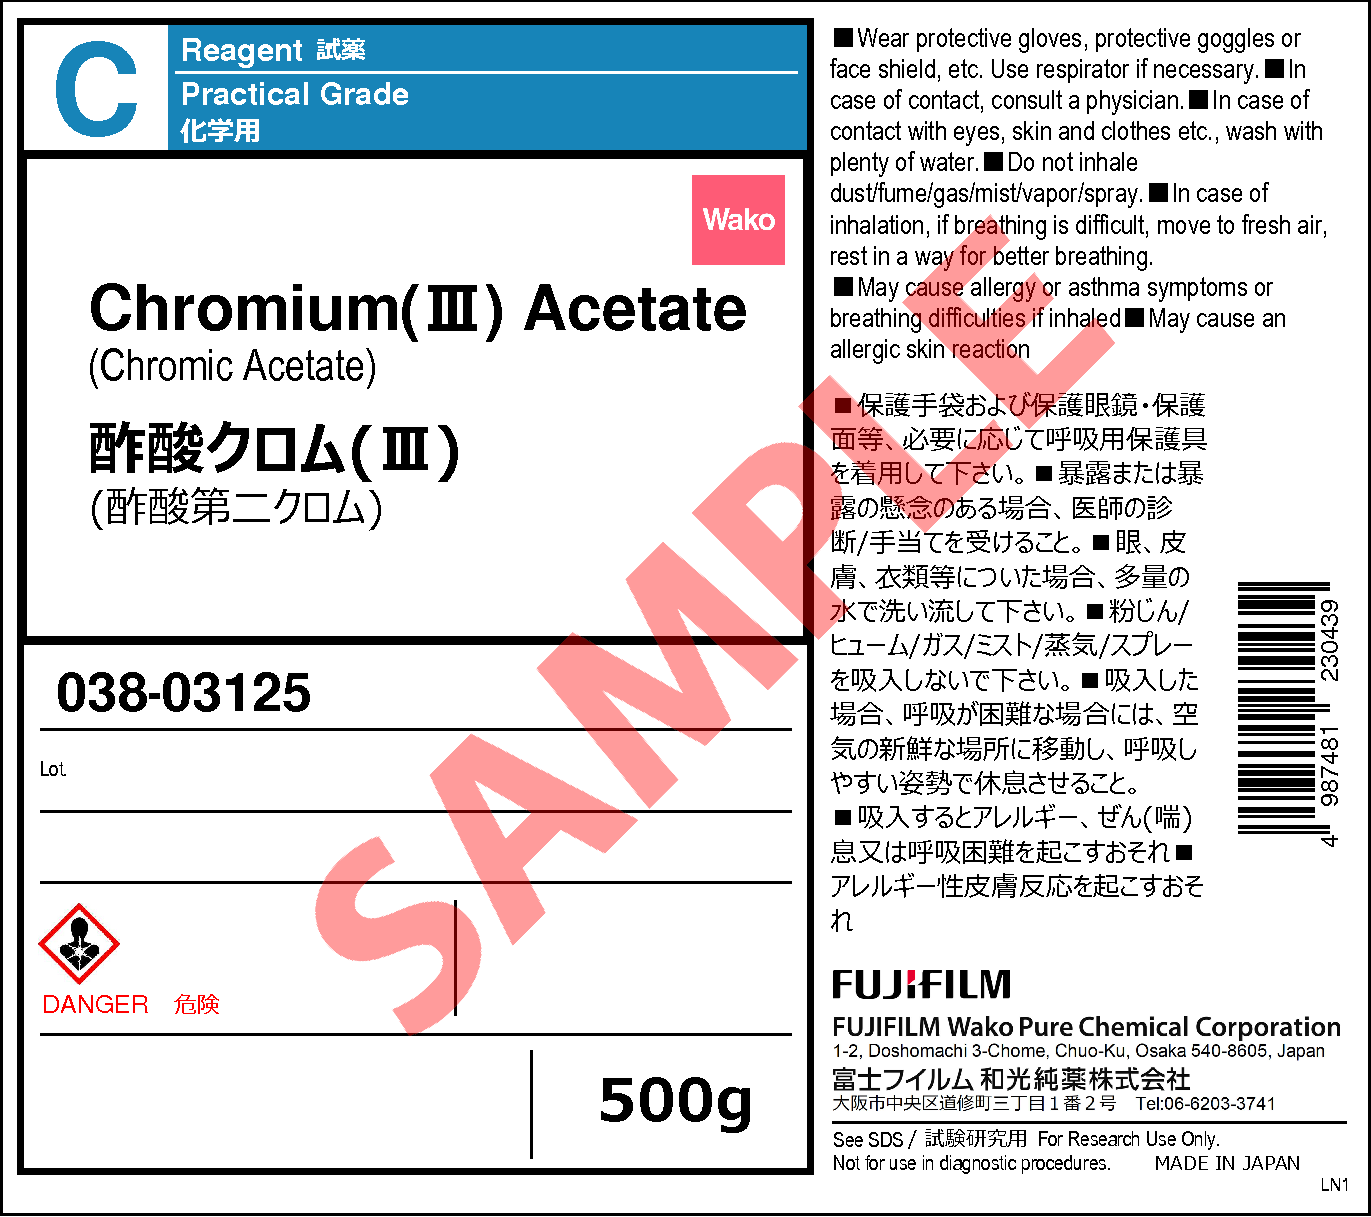 1066-30-4・酢酸クロム(III)・Chromium(III) Acetate・034-03122・038 